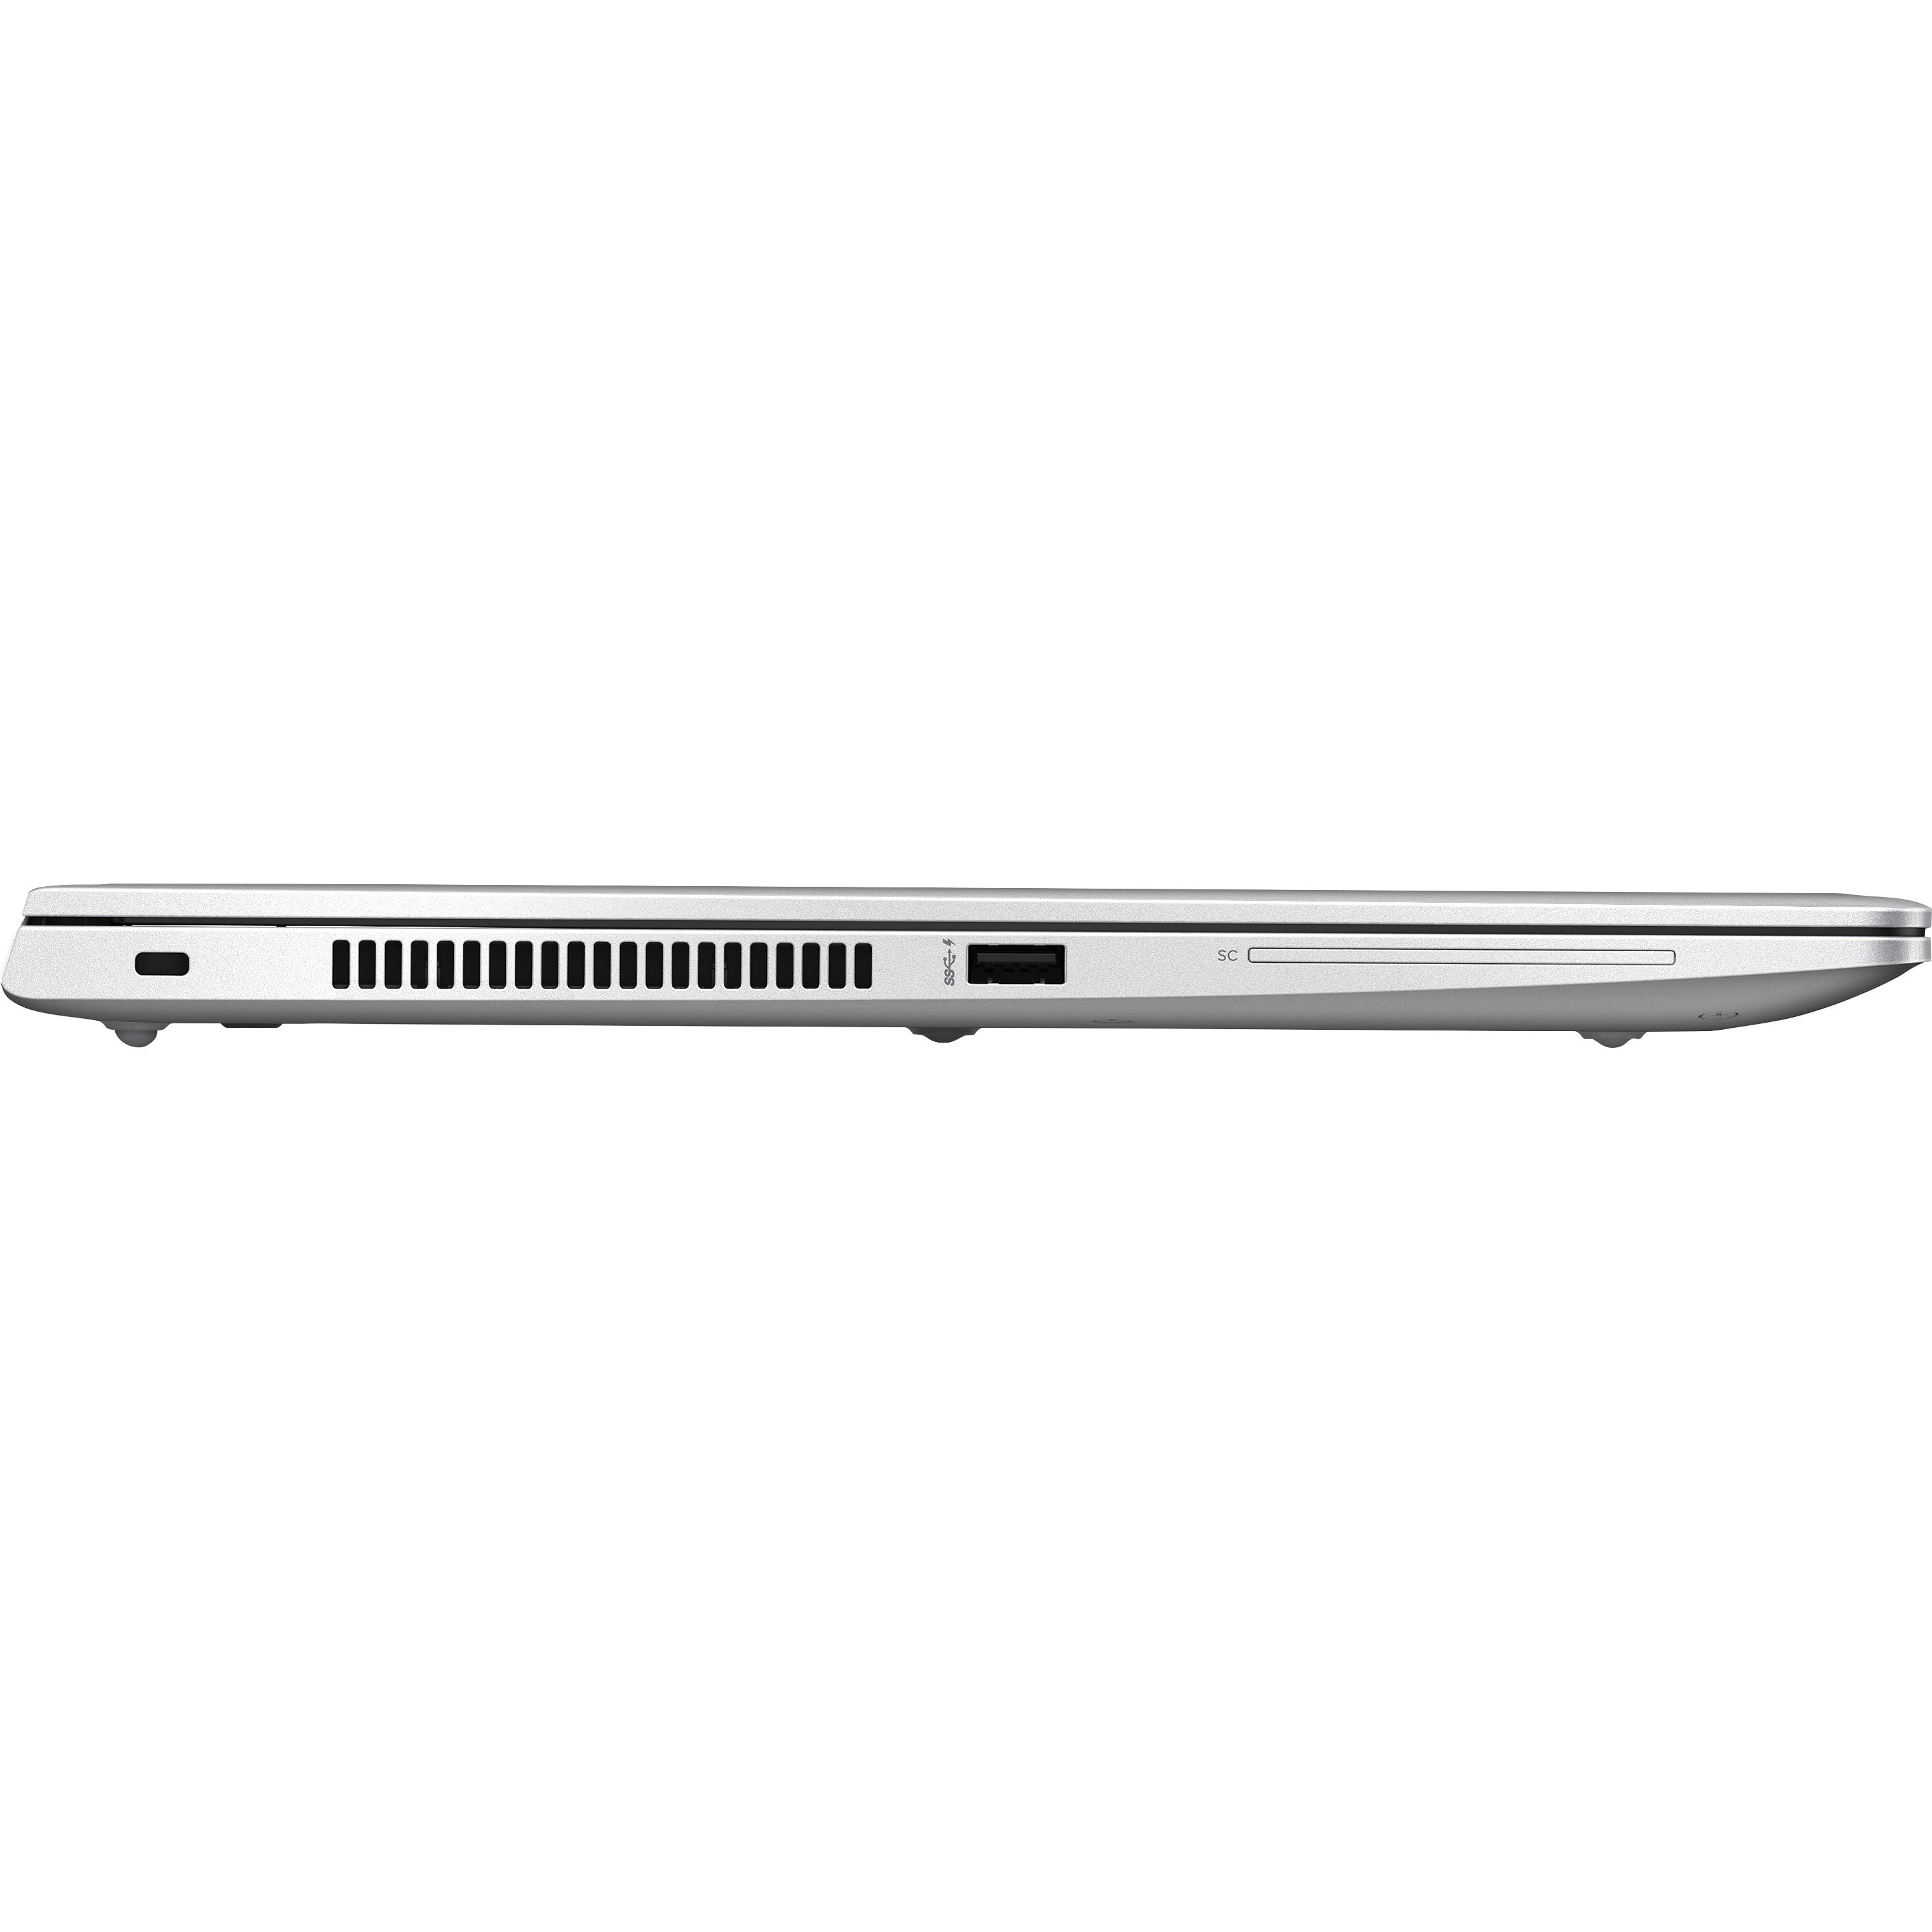 HP EliteBook 830 G5 13.3